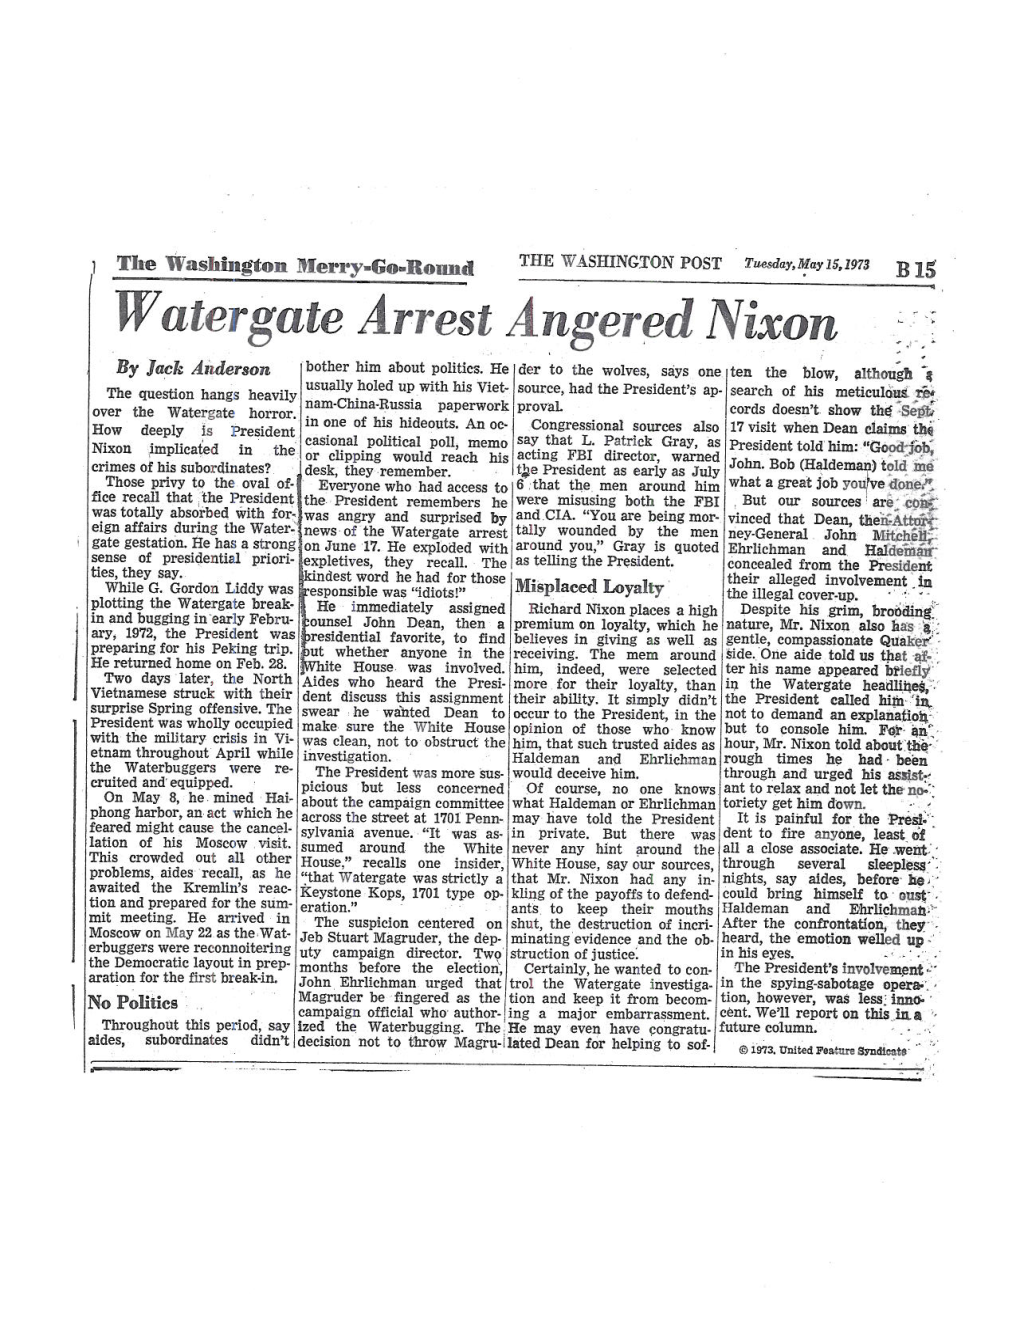 Watergate Arrest Angered Nixon